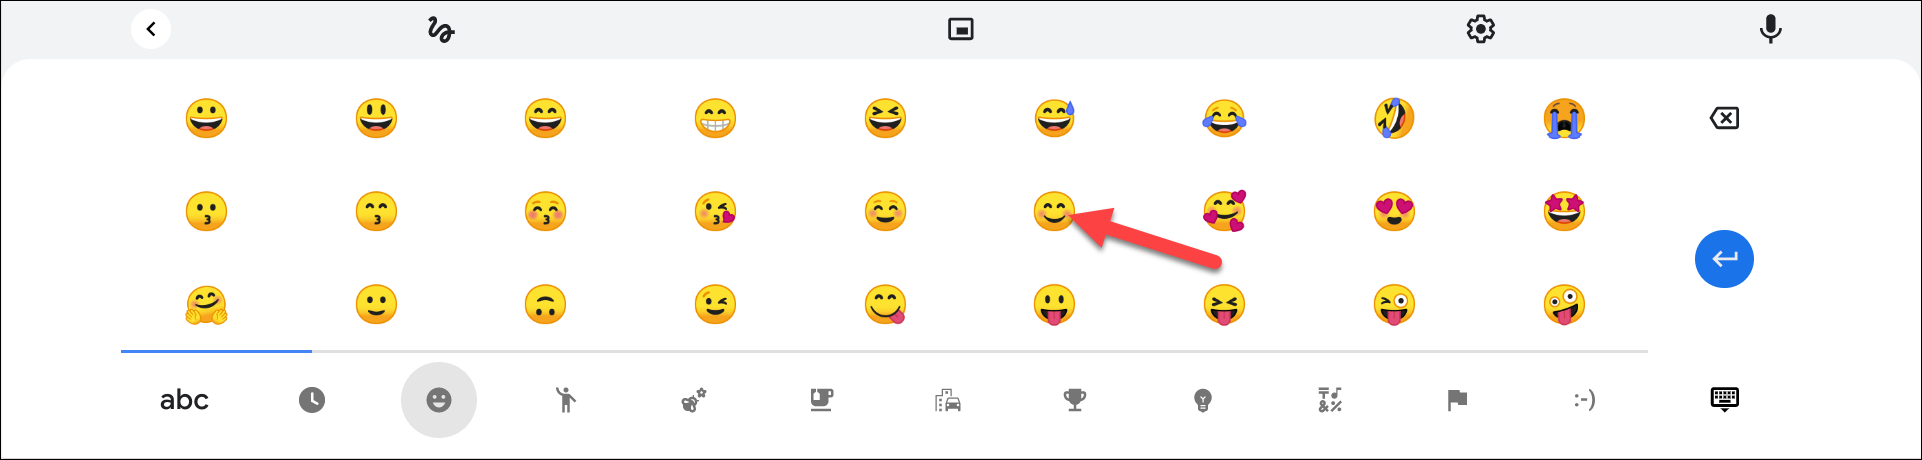 selecione emoji do teclado virtual